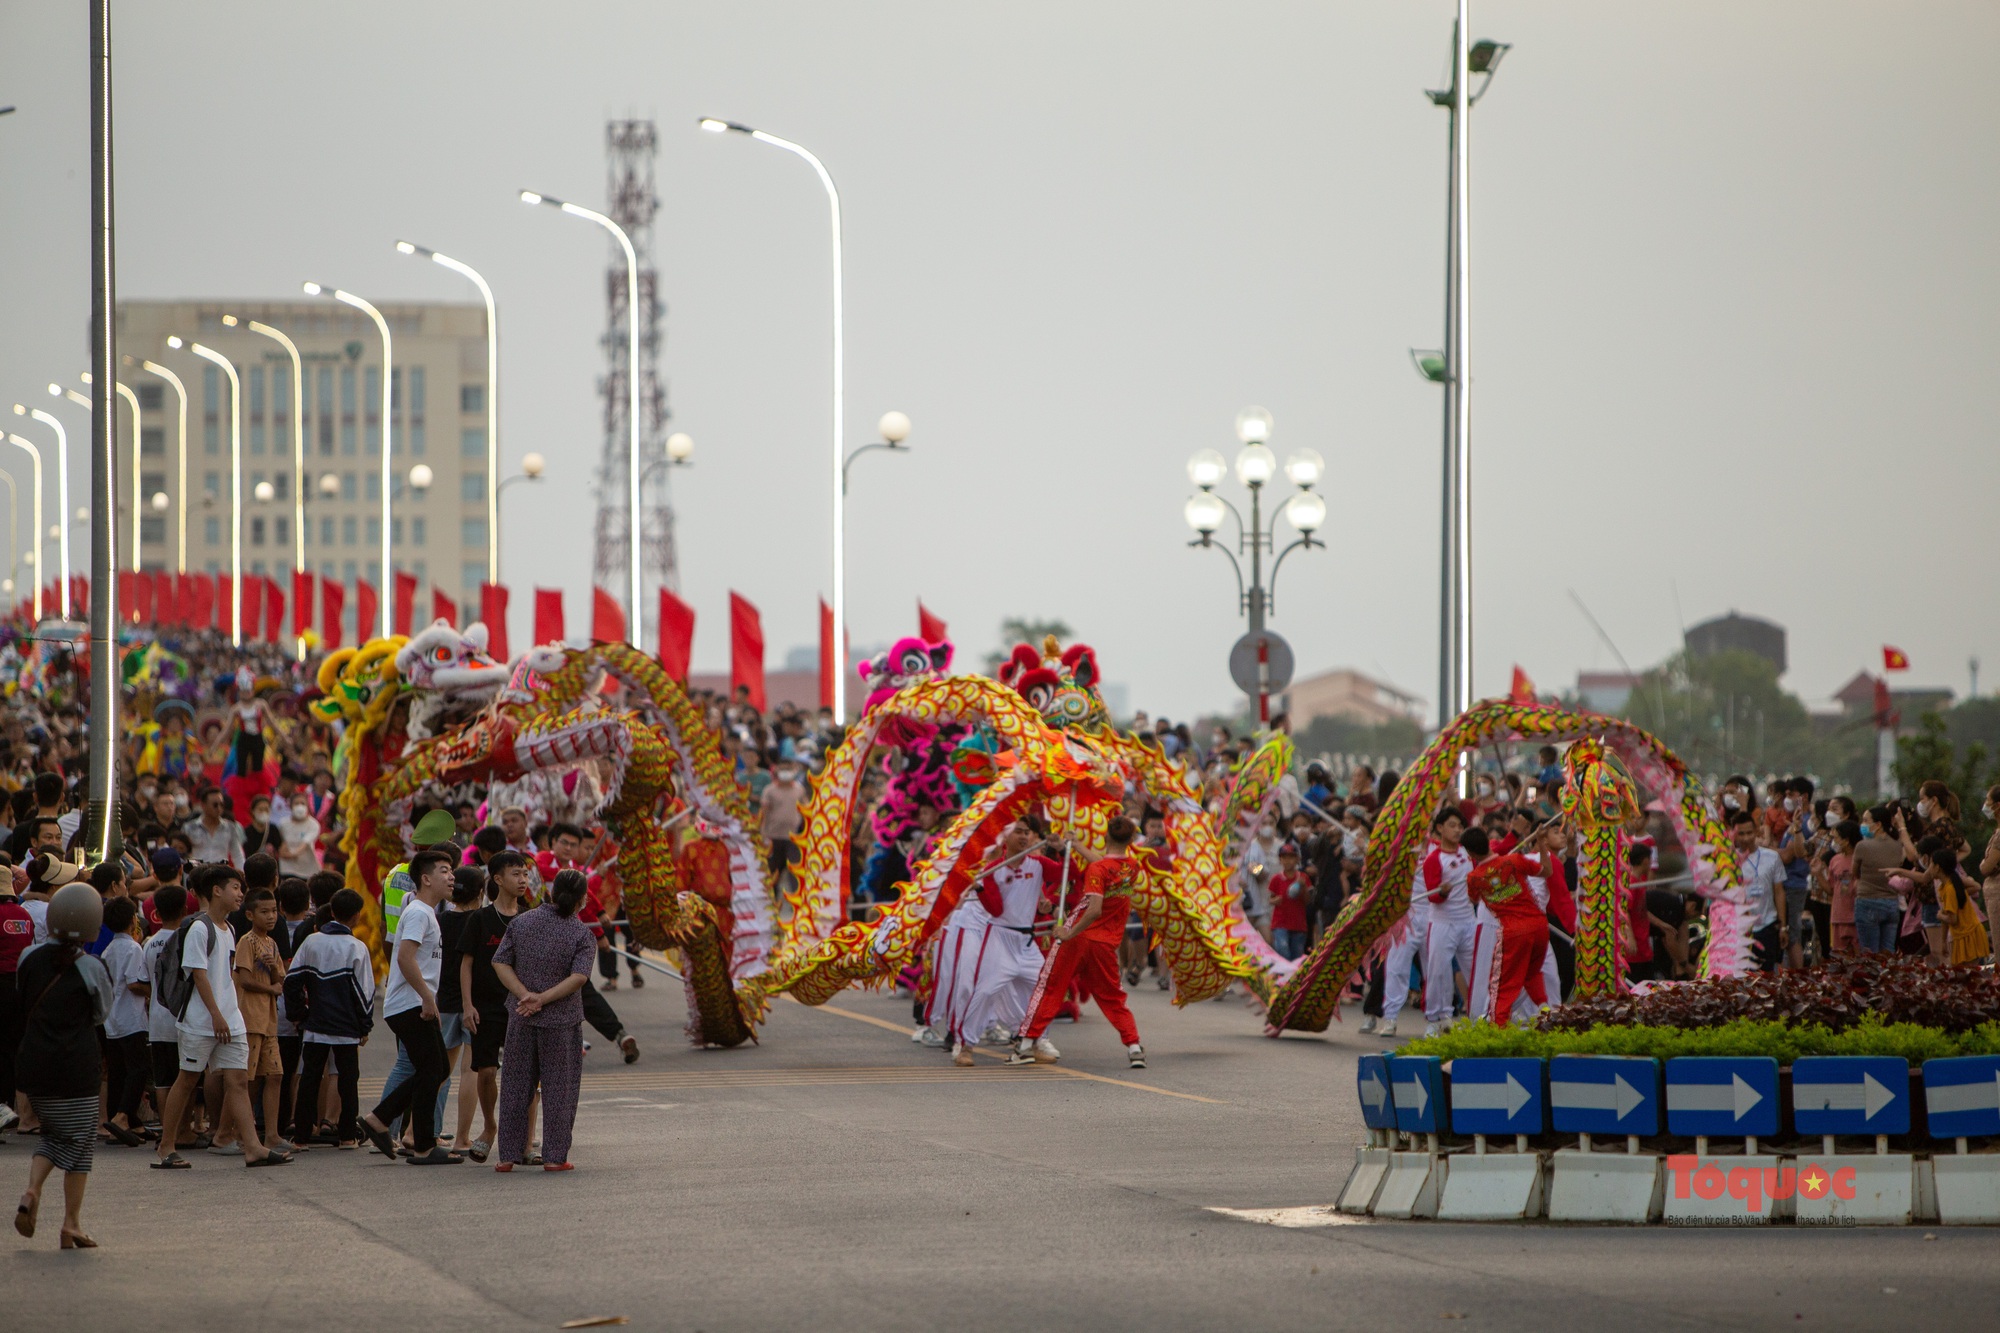 Đa sắc màu và náo nhiệt ở Lễ hội đường phố tại Quảng Bình  - Ảnh 8.